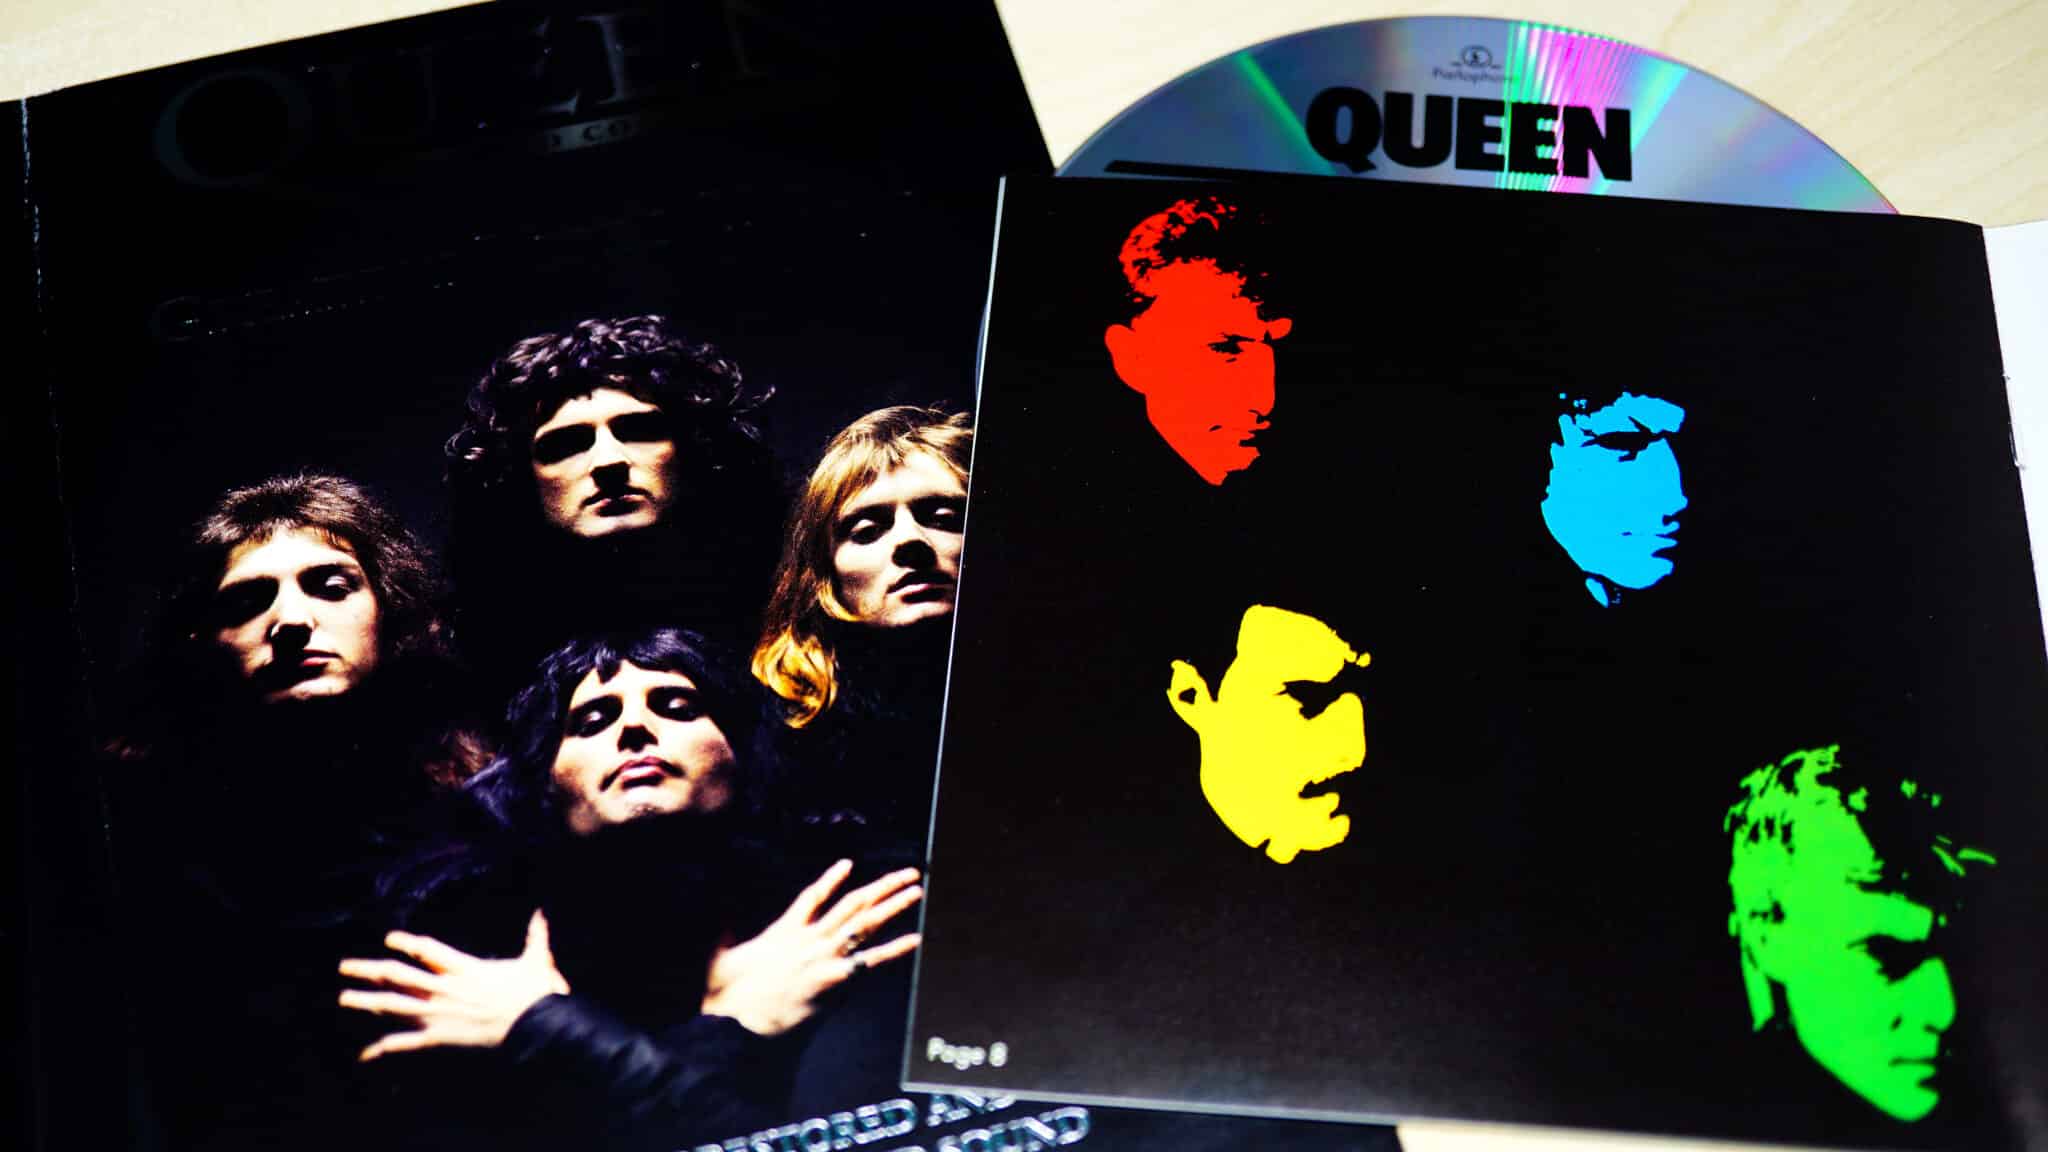 Queen - "Bohemian Rhapsody"